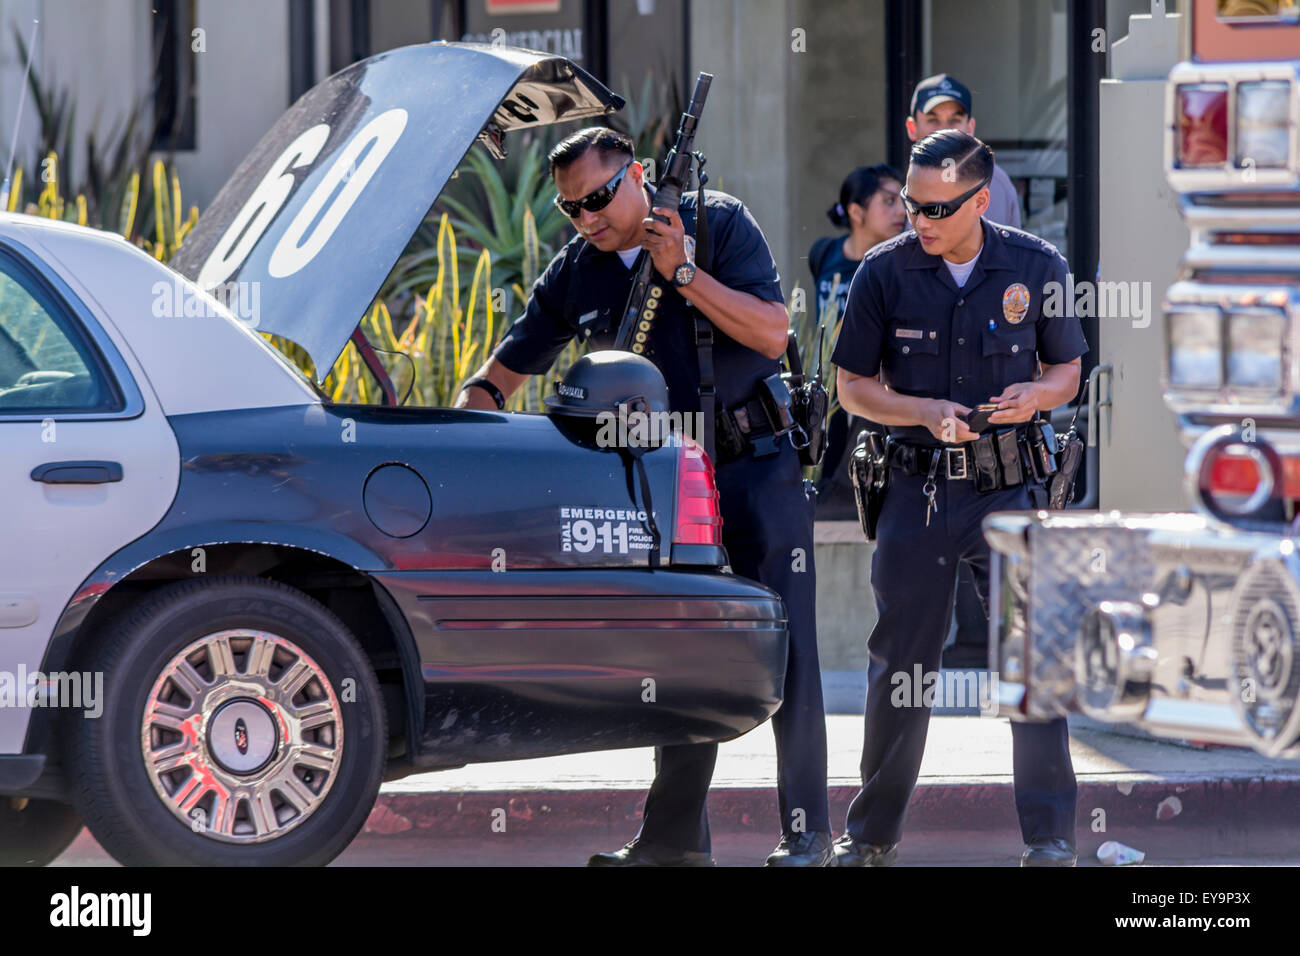 Los Angeles, Kalifornien, USA. 24. Juli 2015. Polizei von Los Angeles in Szene der Offizier beteiligt, schießen, dass linke verdächtigen tot. Bildnachweis: Chester Brown/Alamy Live-Nachrichten Stockfoto